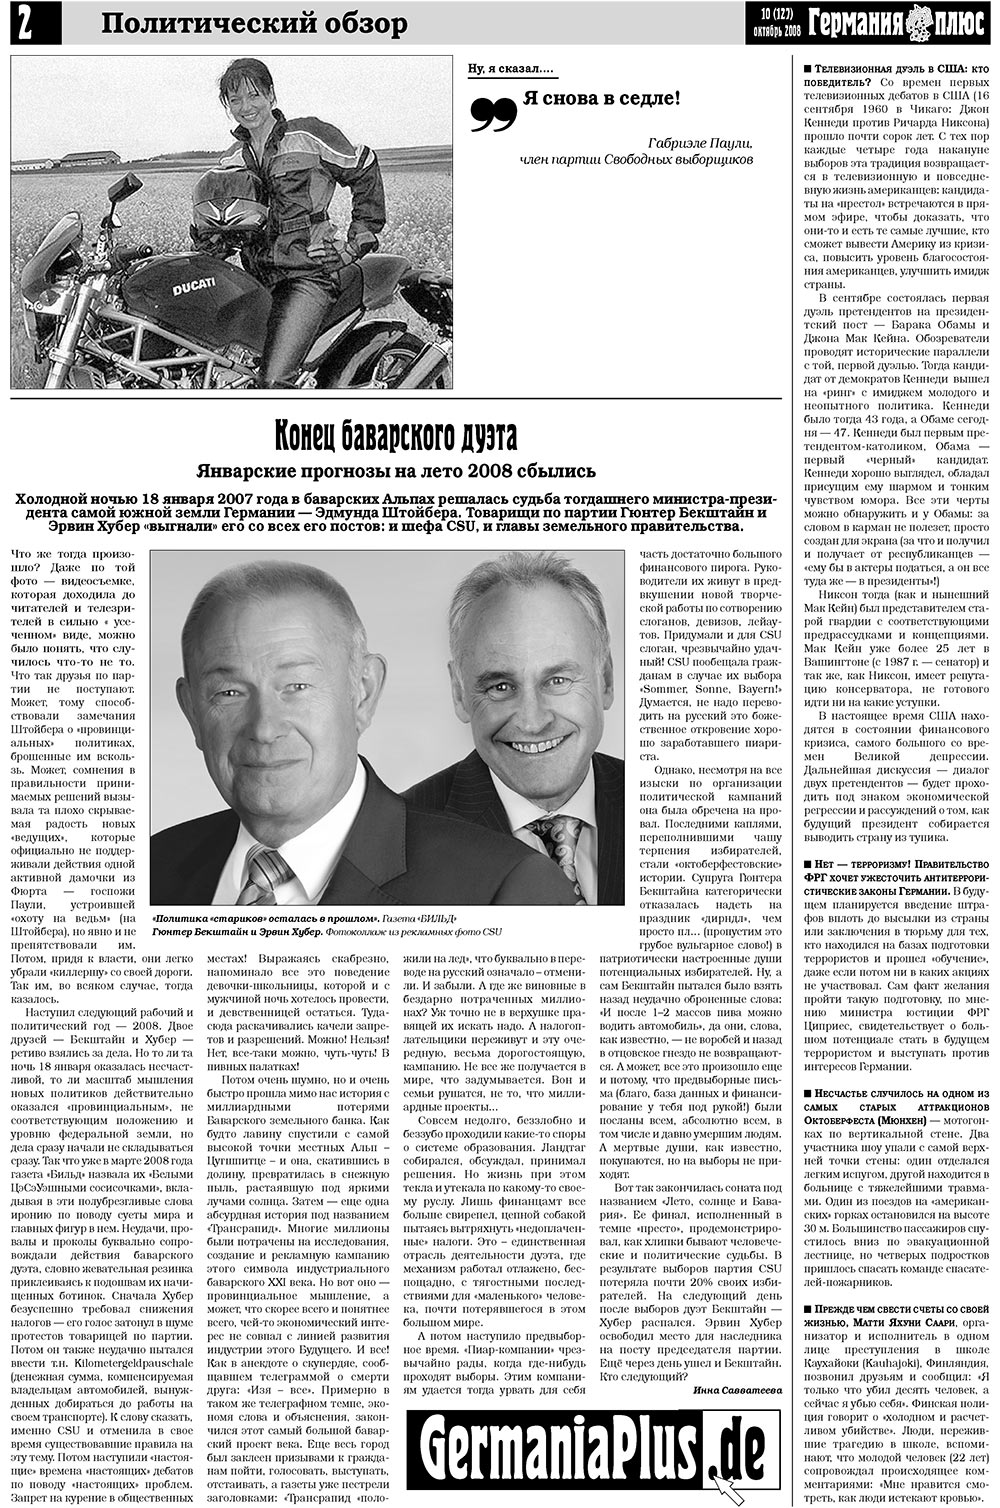 Германия плюс, газета. 2008 №10 стр.2